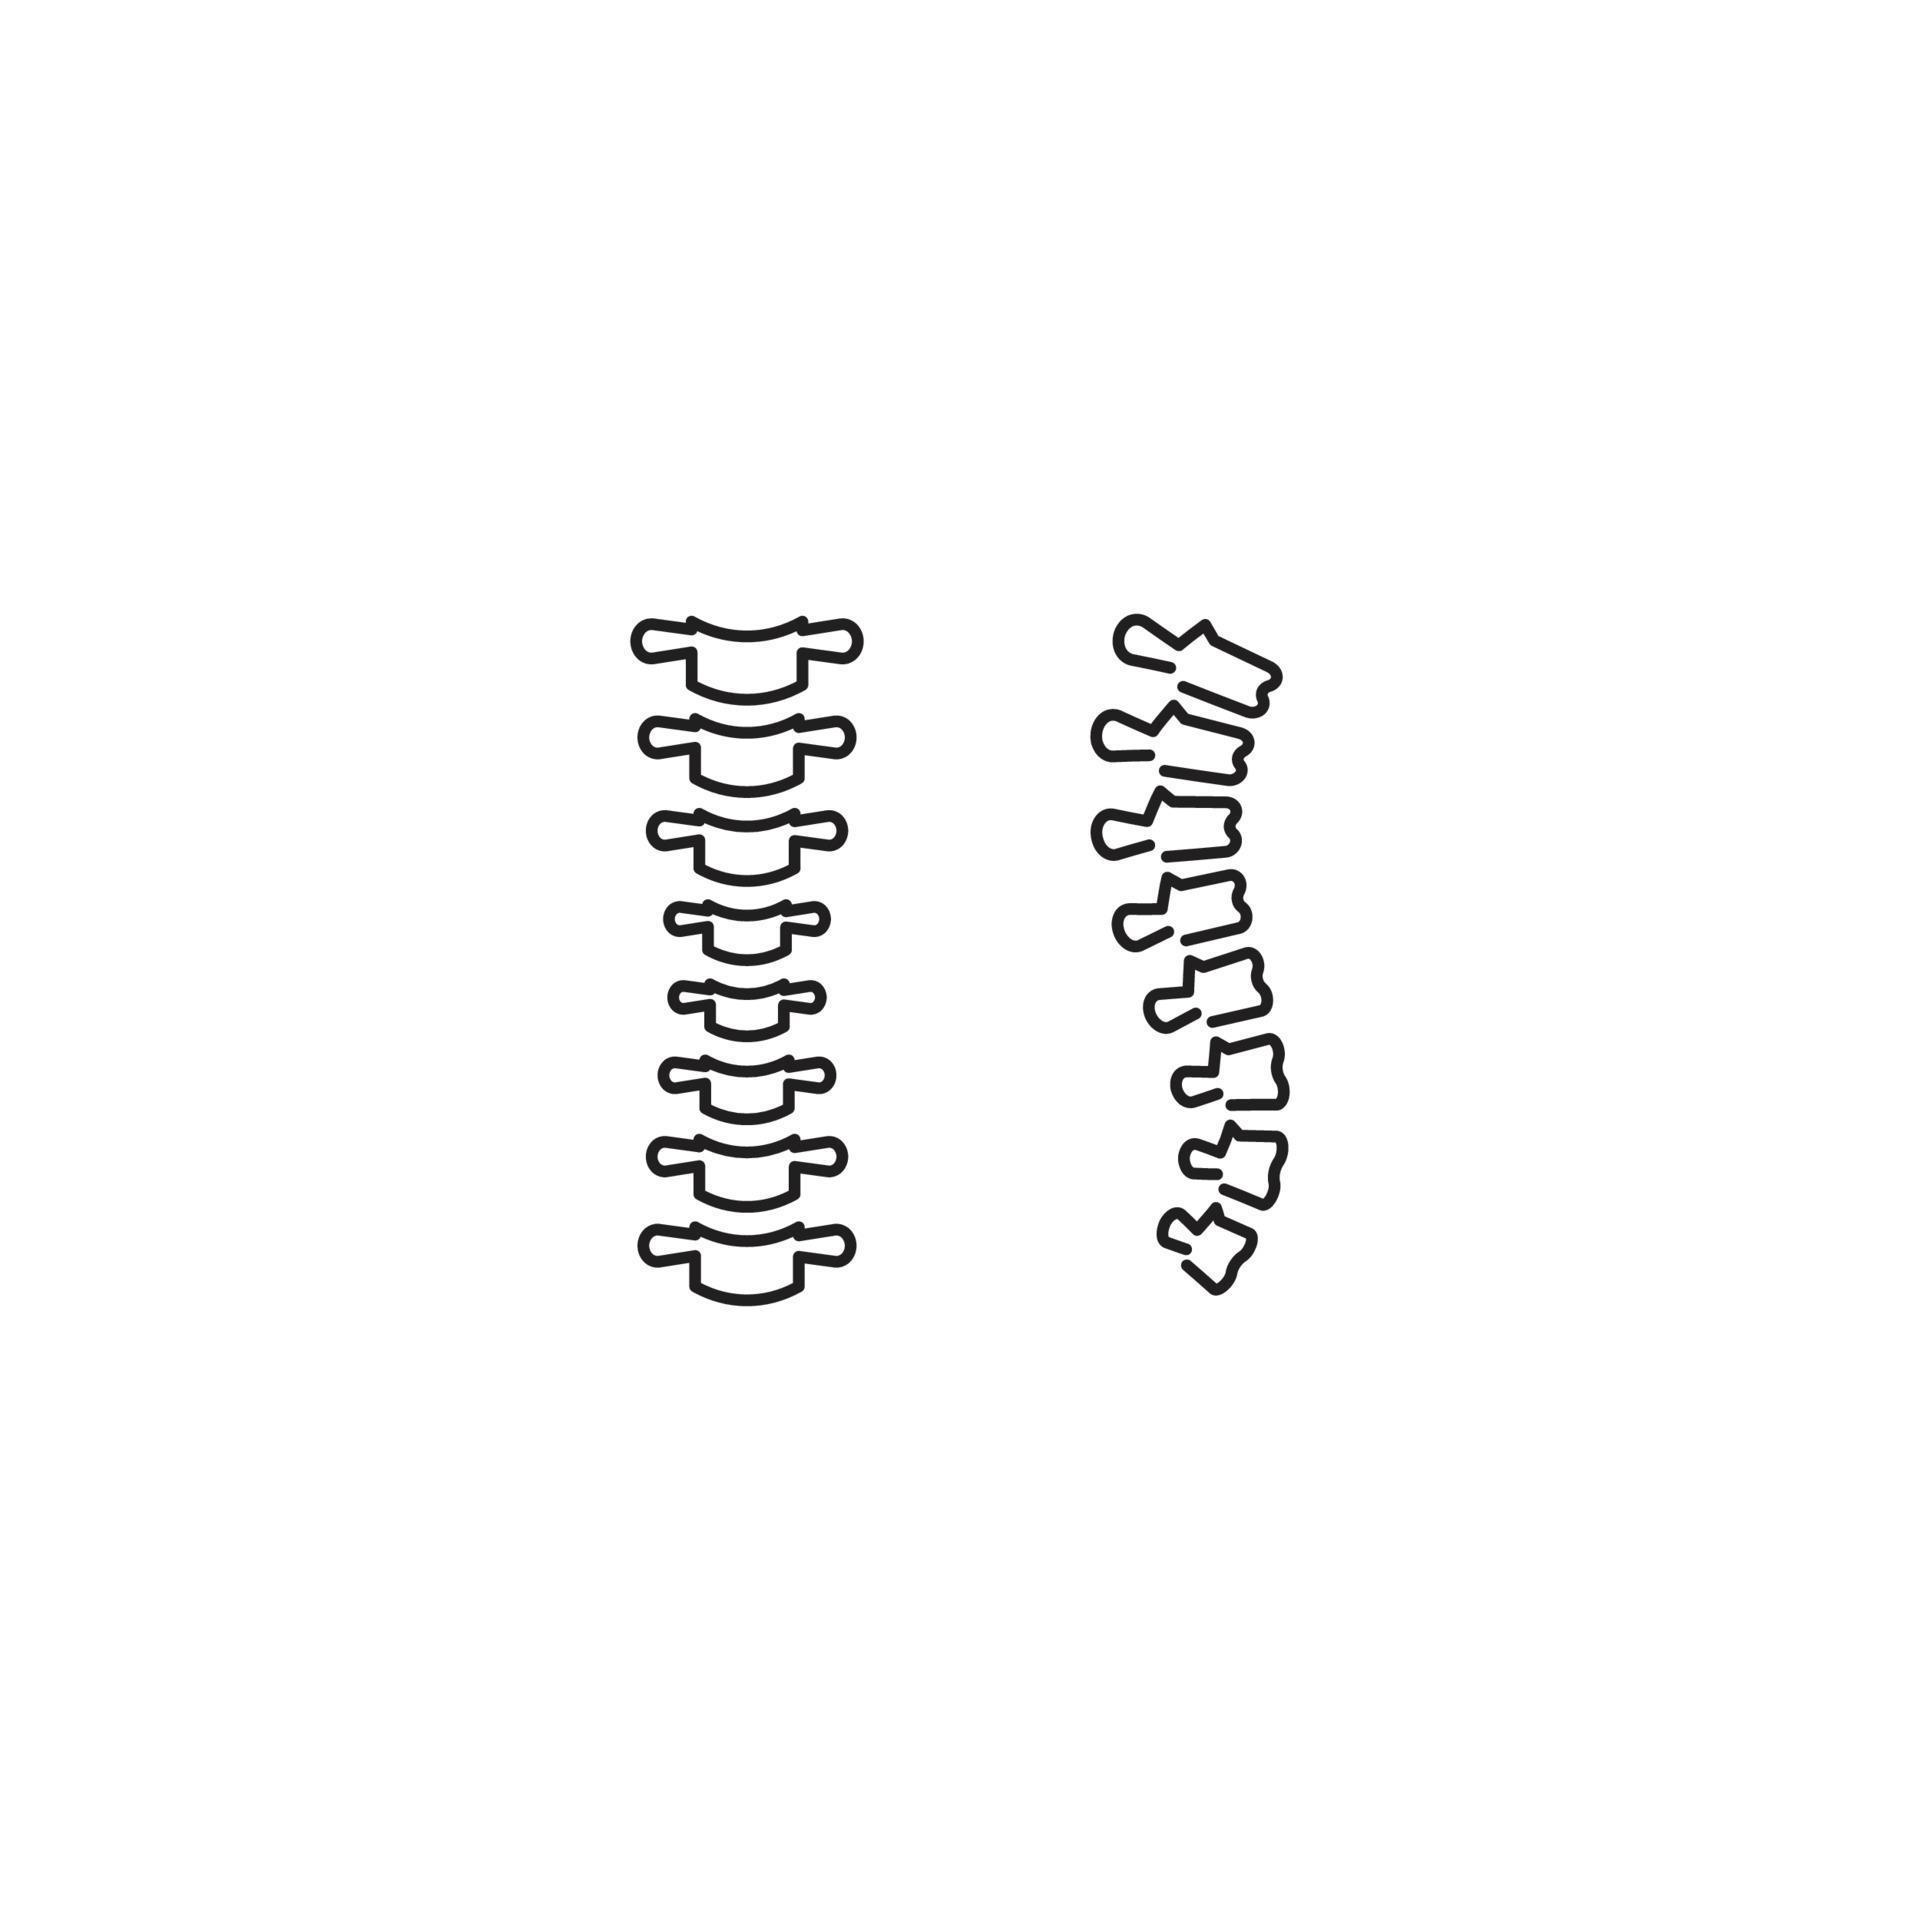 spina dorsale. modello di icona vettoriale